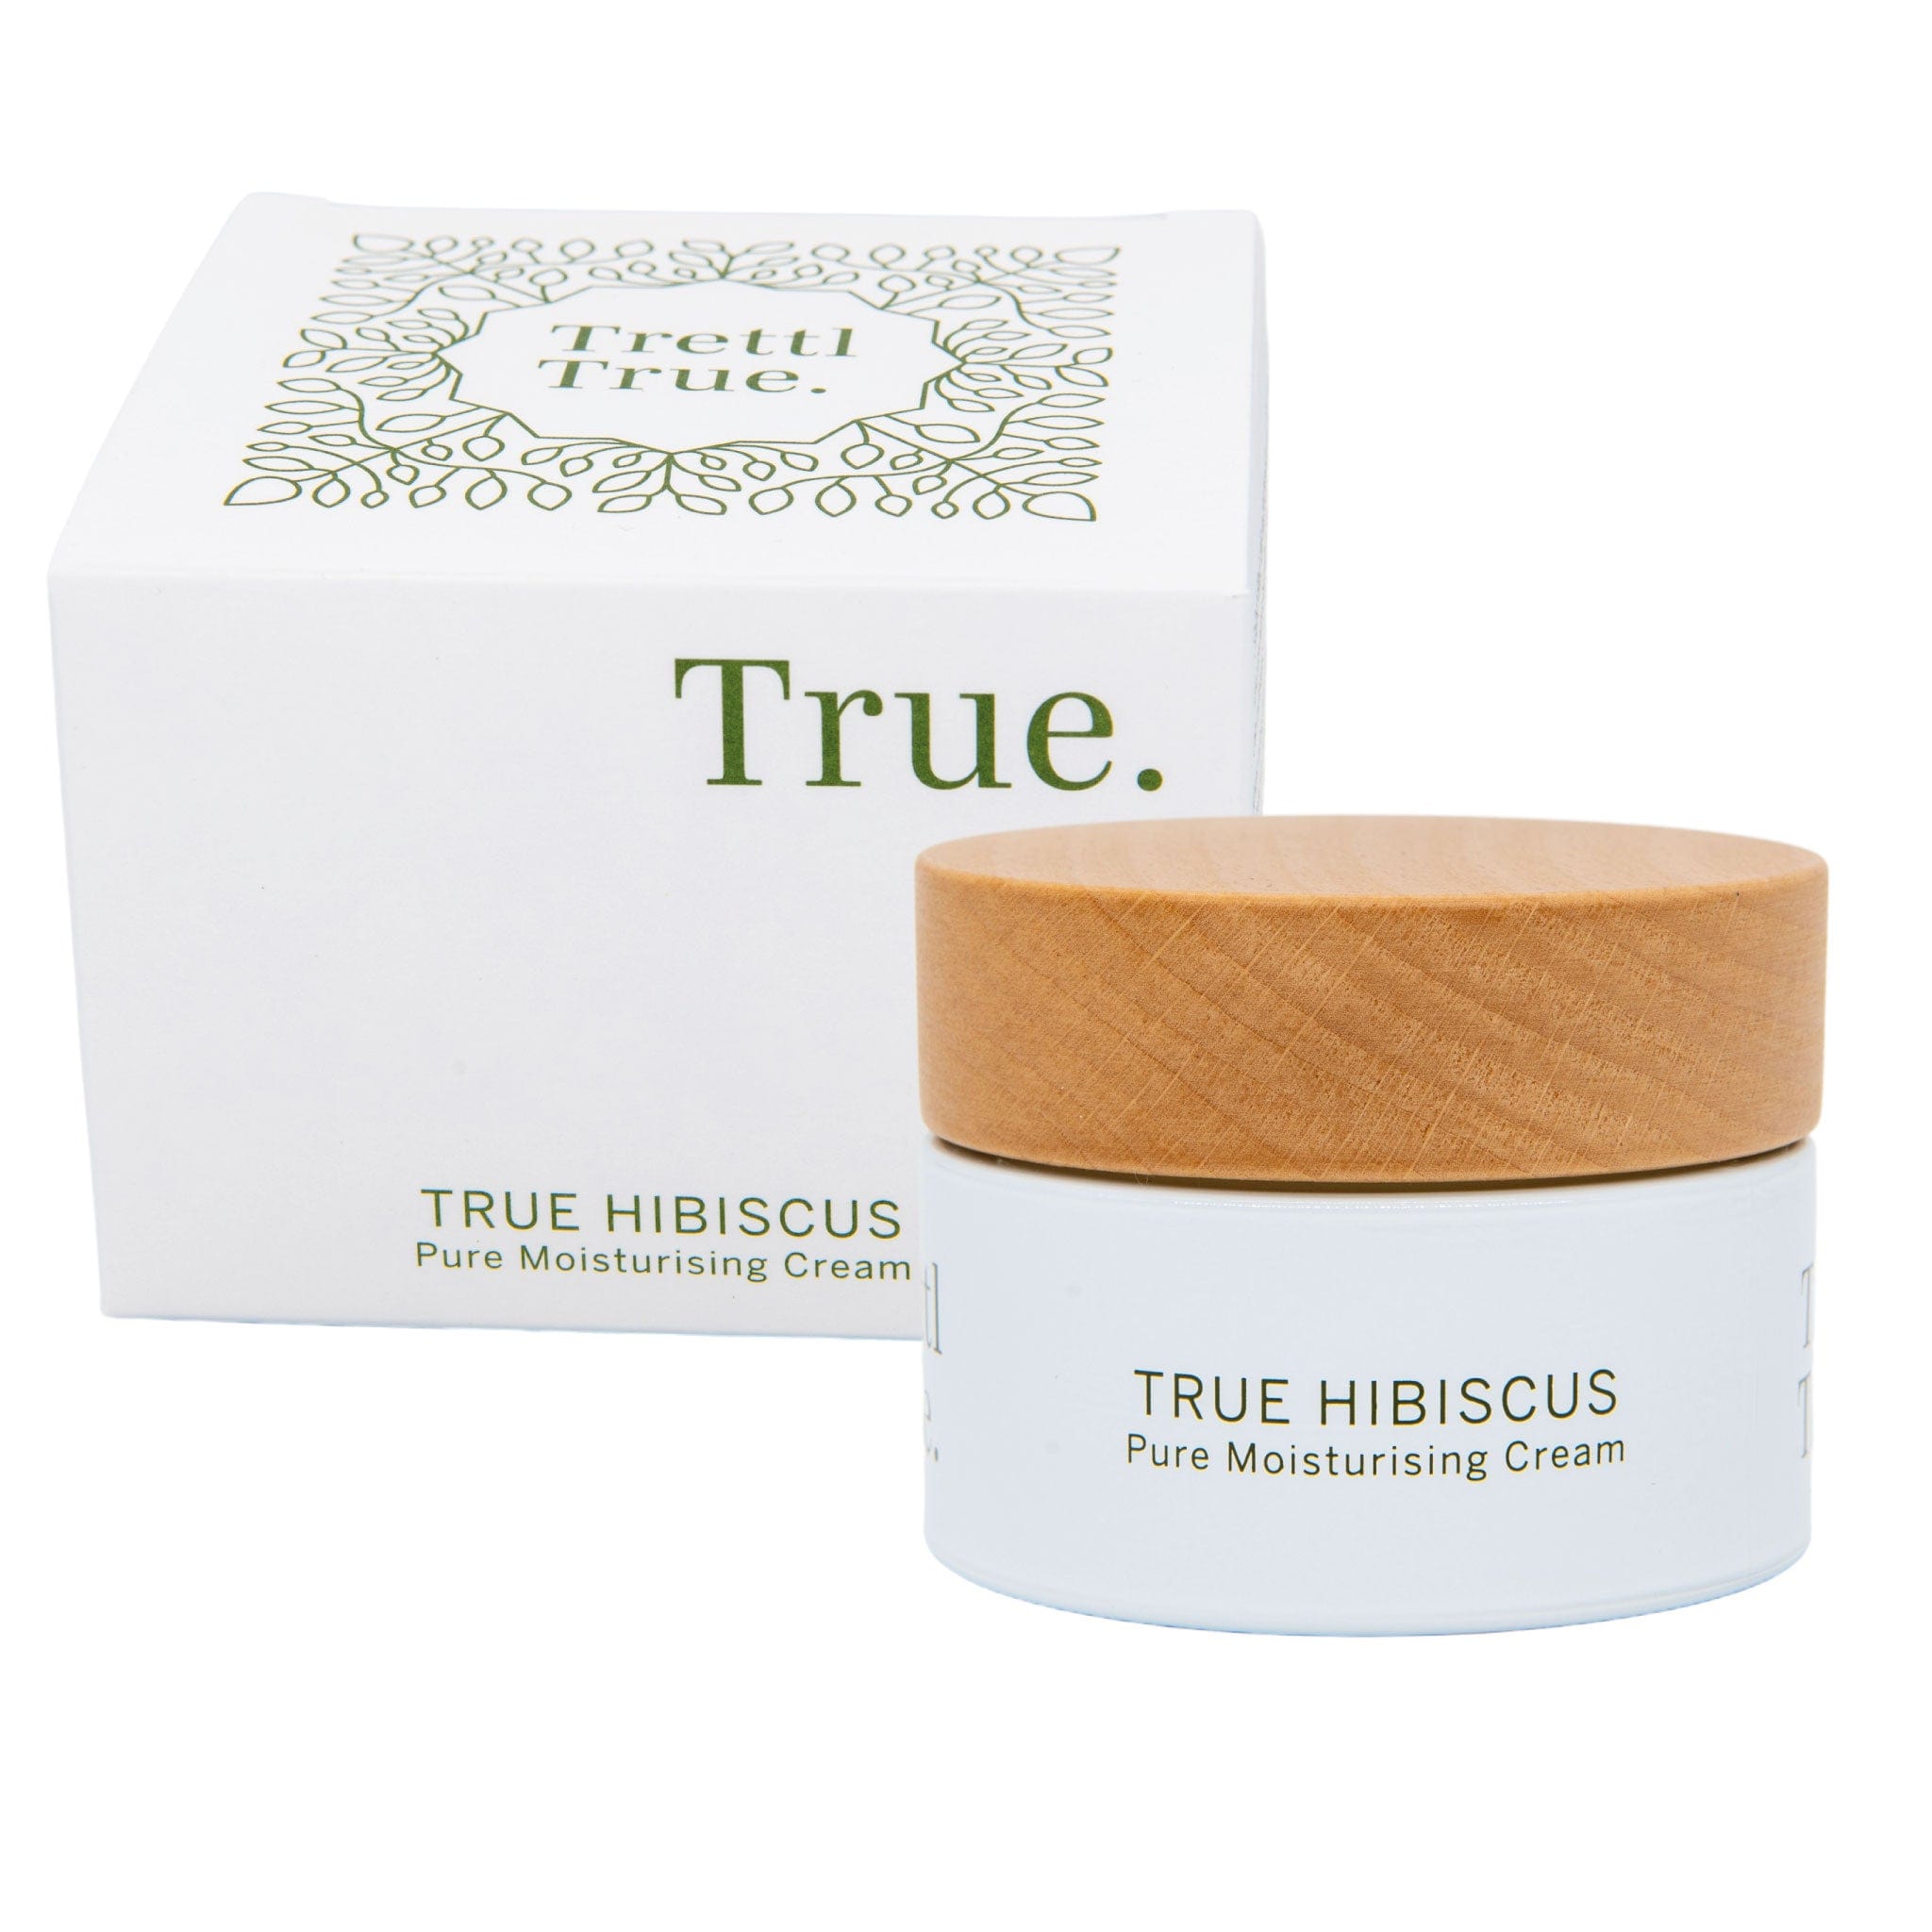 Trettl Cosmetics True Hibiscus Pure Moisturising Cream